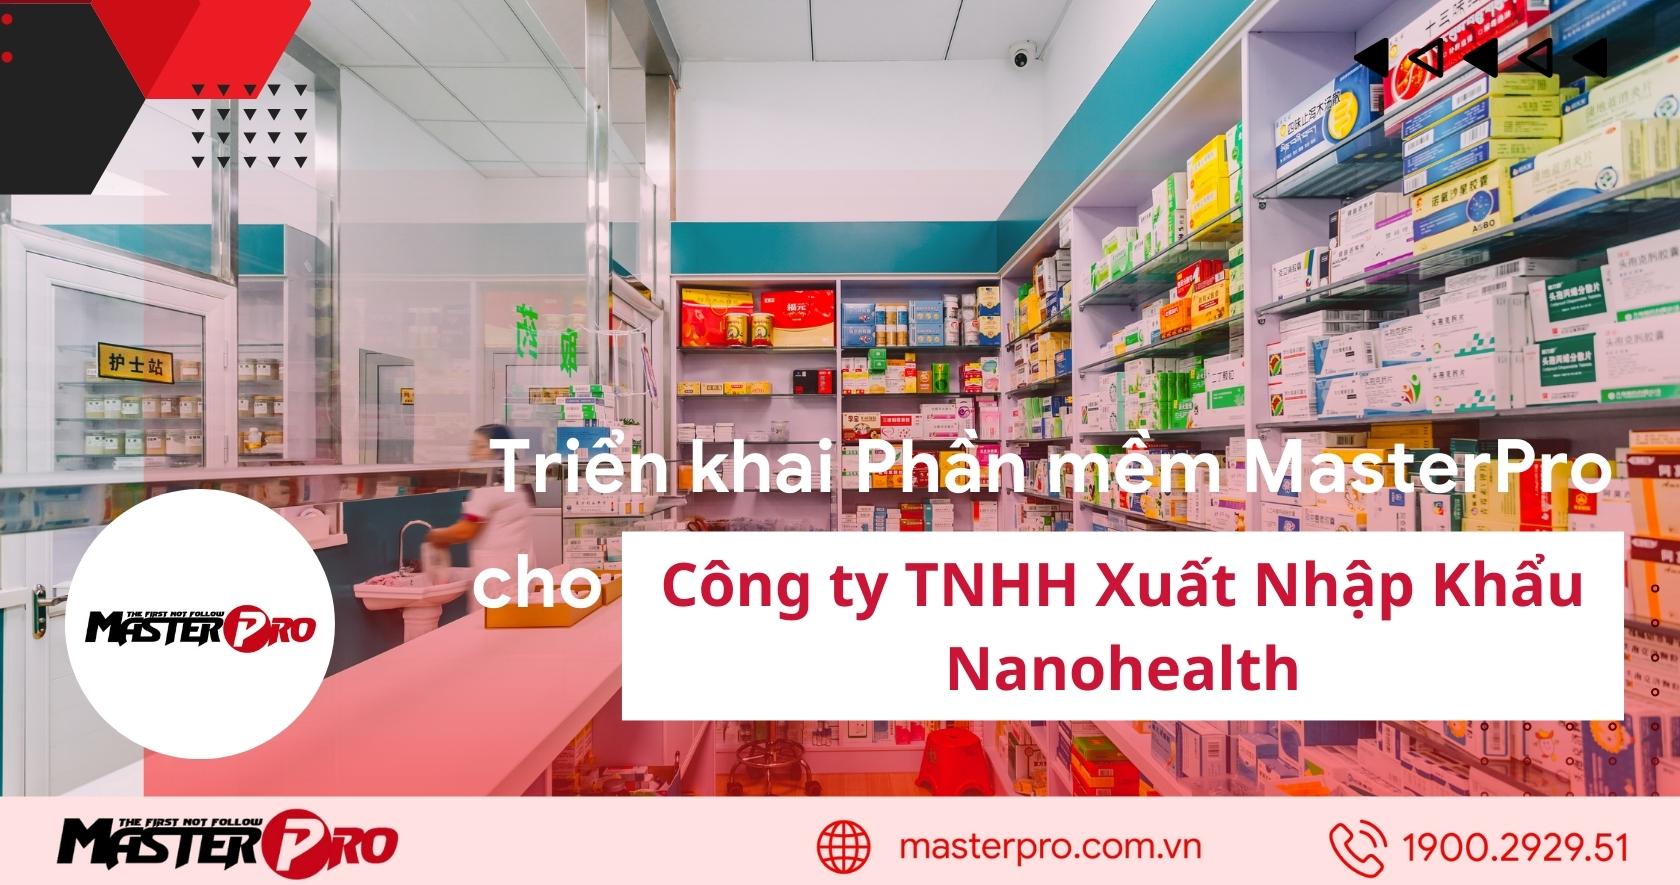 trien-khai-phan-mem-cho-cong-ty-tnhh-xuat-nhap-khau-nanohealth